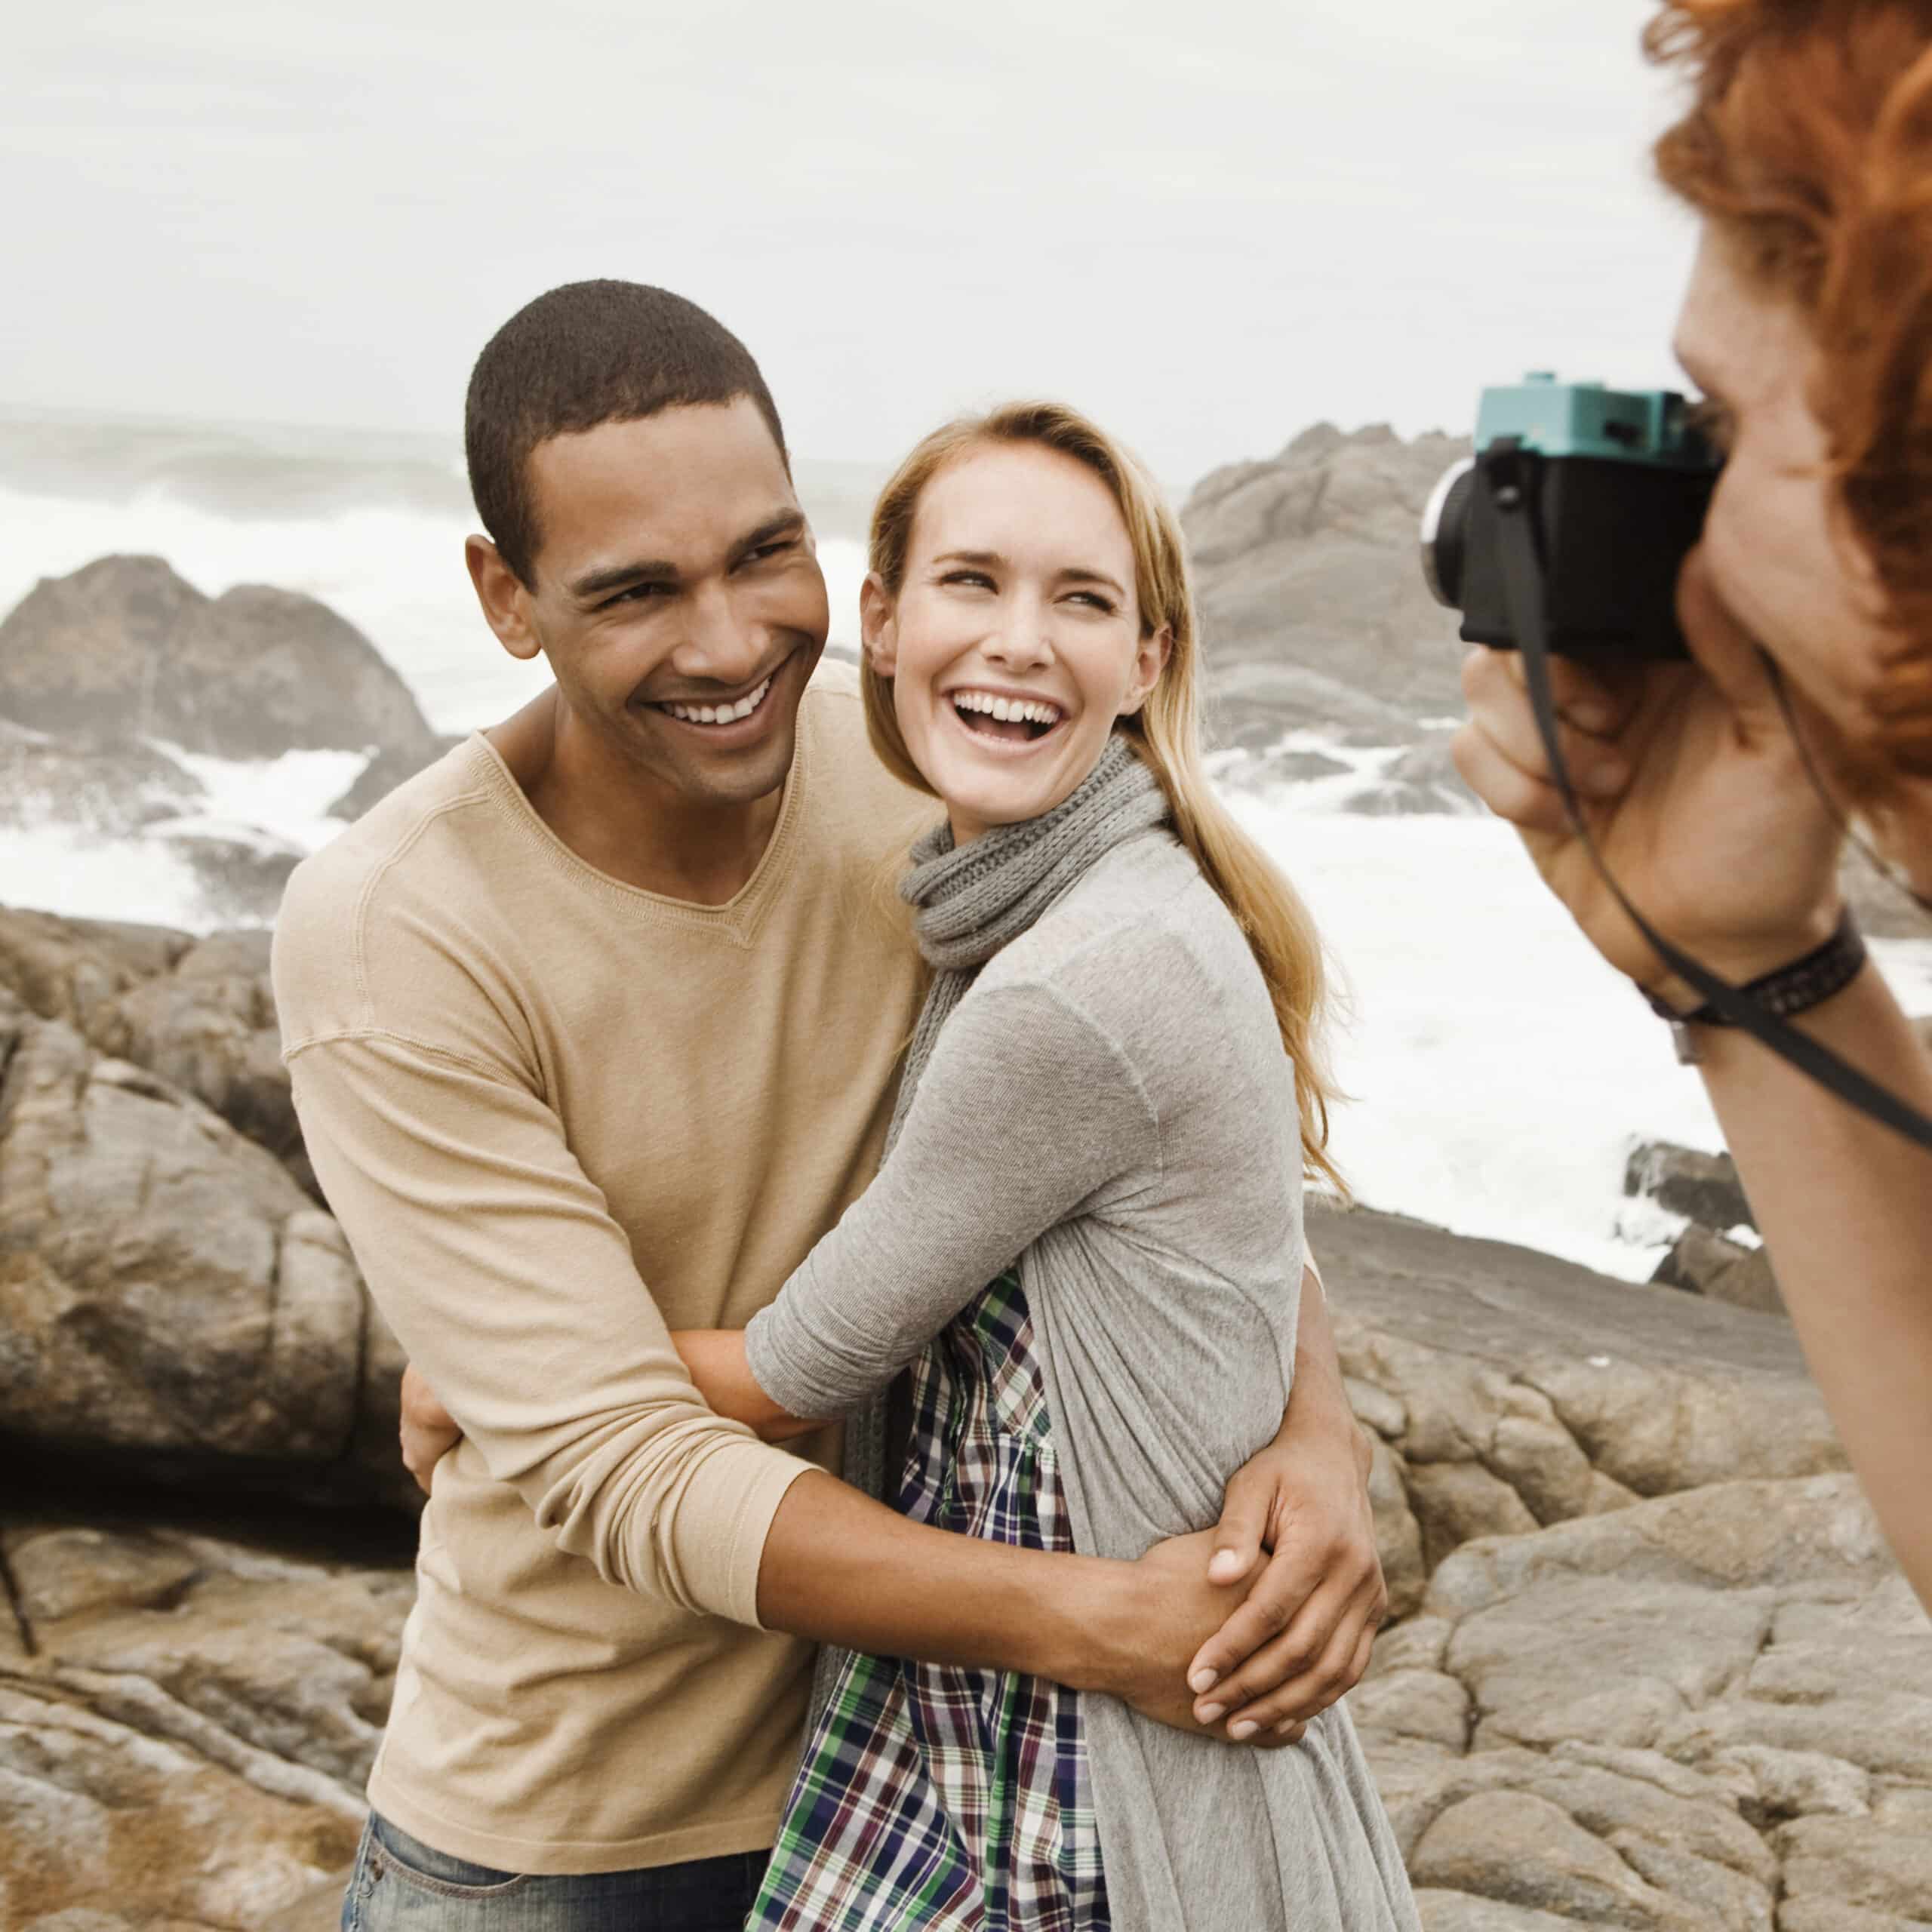 Ein fröhliches Paar umarmt sich an einer felsigen Küste, während eine Person ein Foto von ihnen macht. Der Mann, der ein hellbraunes Hemd trägt, lächelt die Frau an, die einen grauen Schal trägt, und beide strahlen Glück aus. © Fotografie Tomas Rodriguez